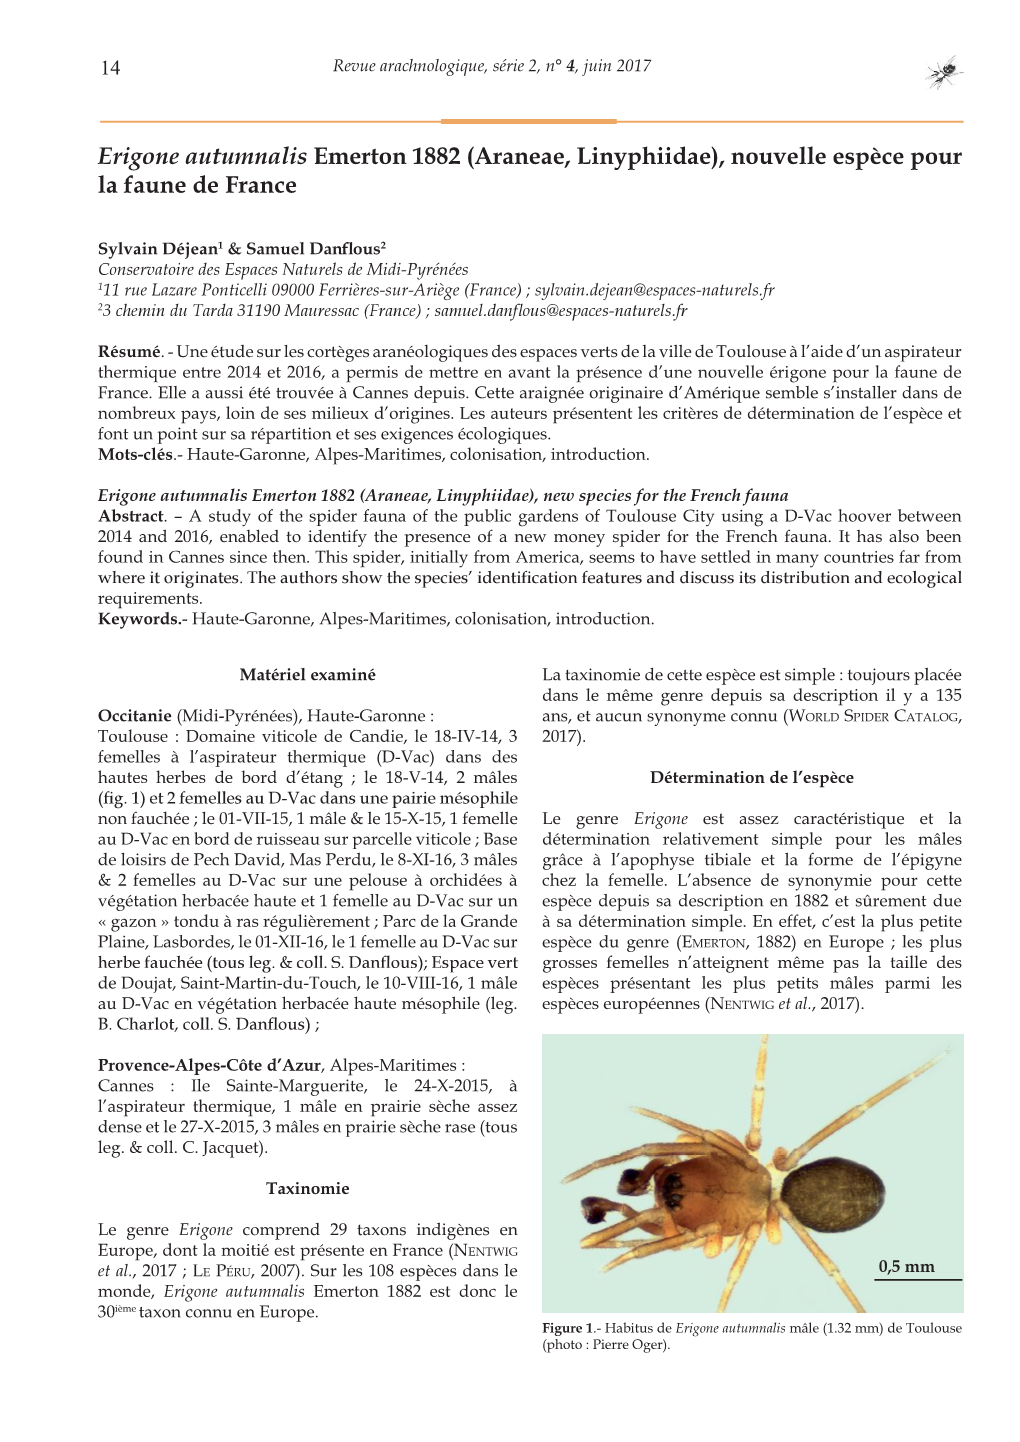 Erigone Autumnalis Emerton 1882 (Araneae, Linyphiidae), Nouvelle Espèce Pour La Faune De France